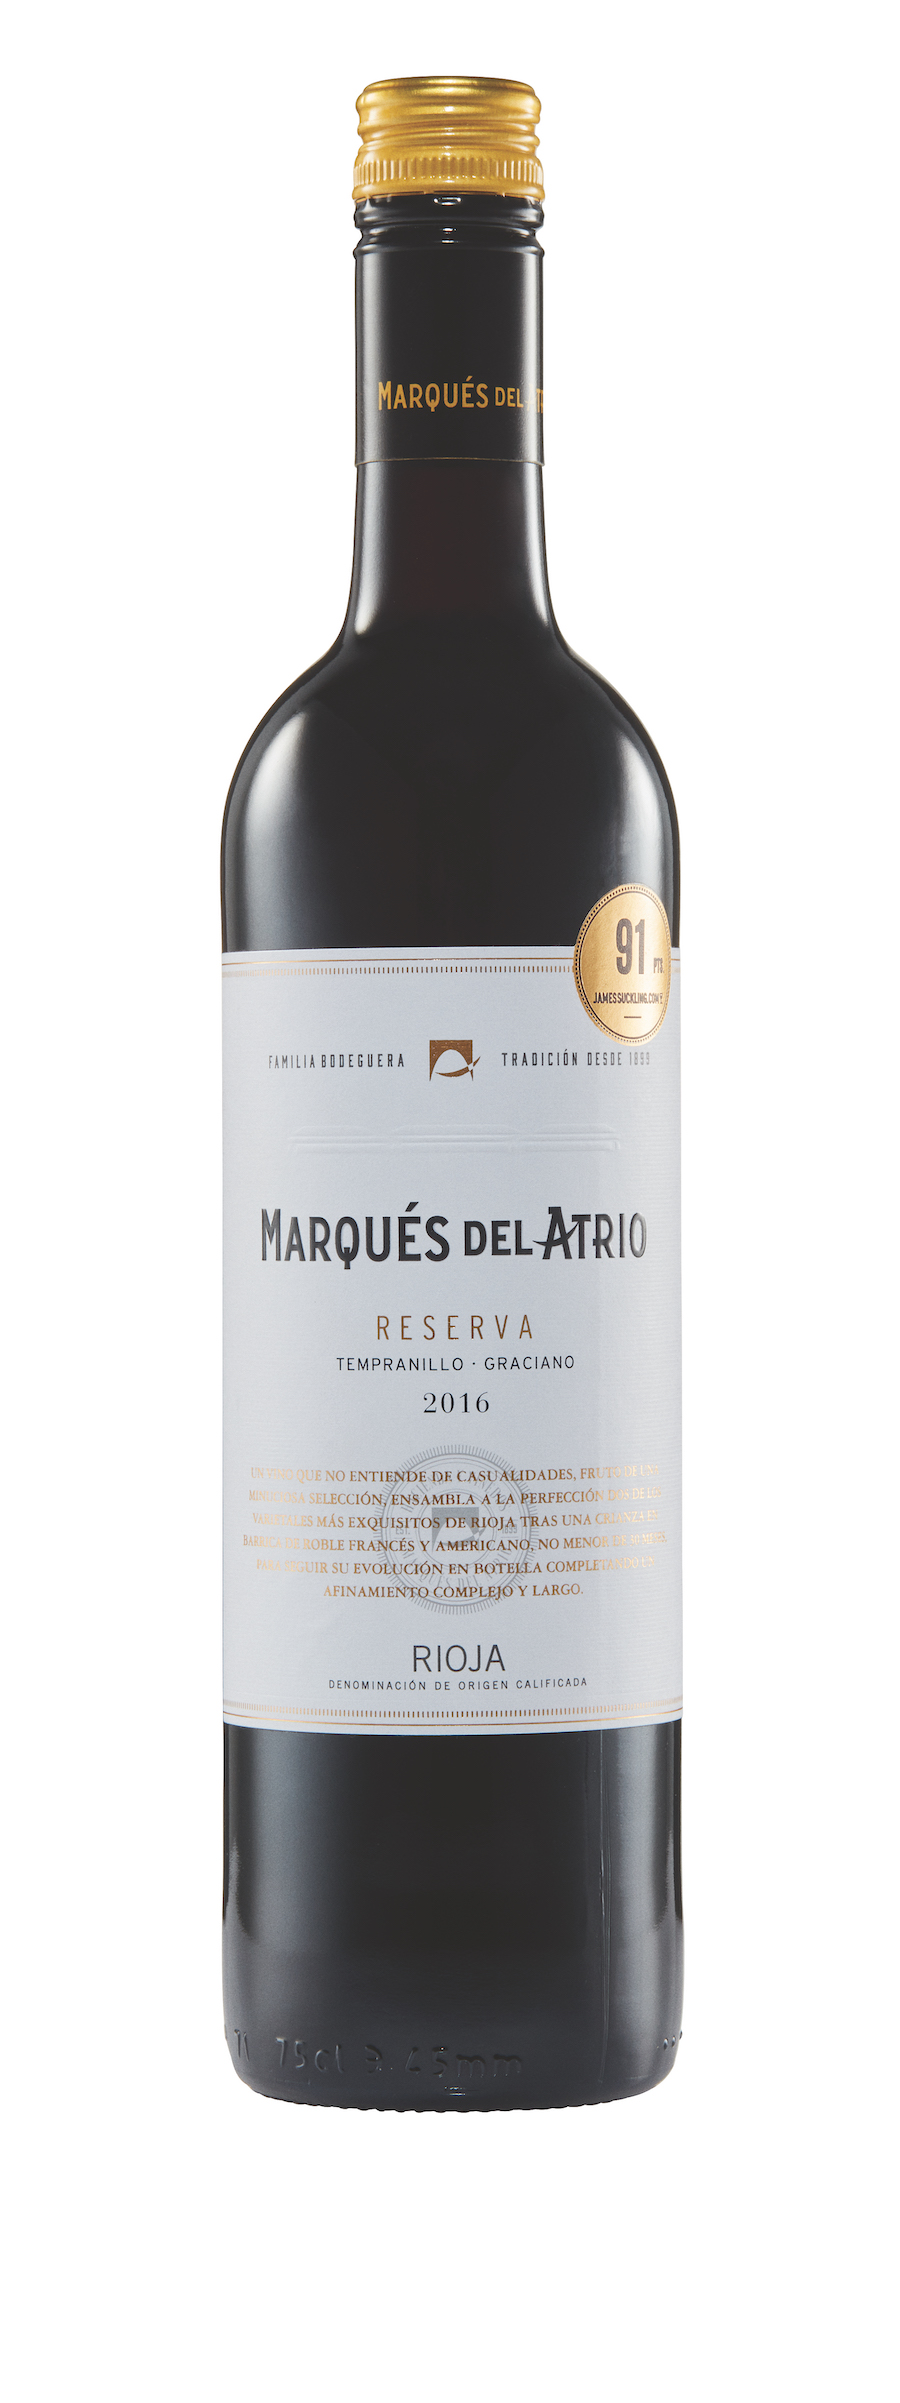 Marques Del Atrio Rioja Reserva - ALDI winter wines